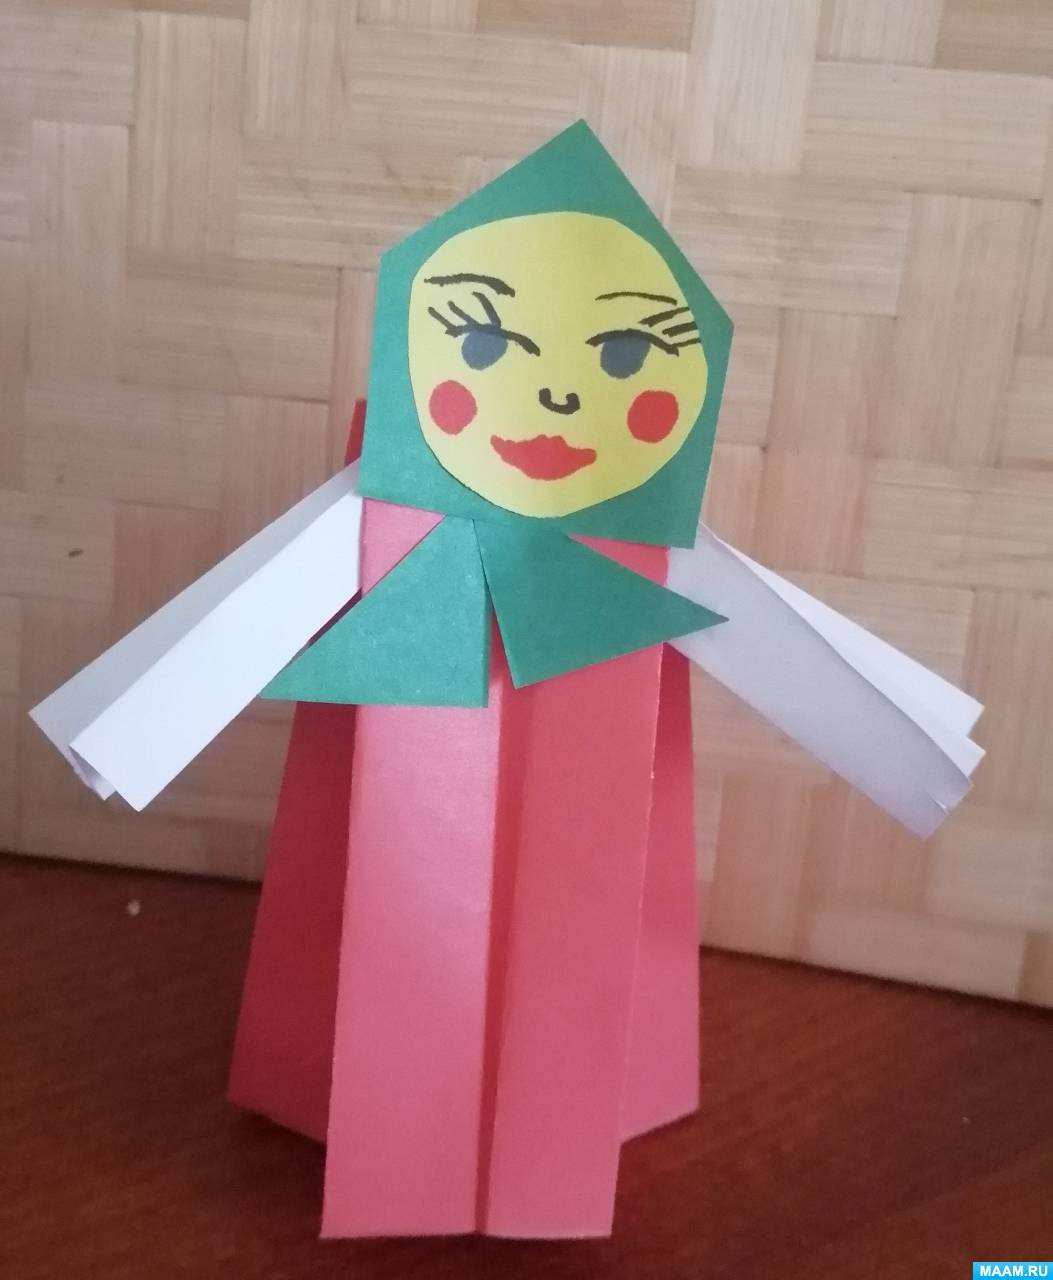 Оригами из бумаги для детей: 8 идей простых поделок